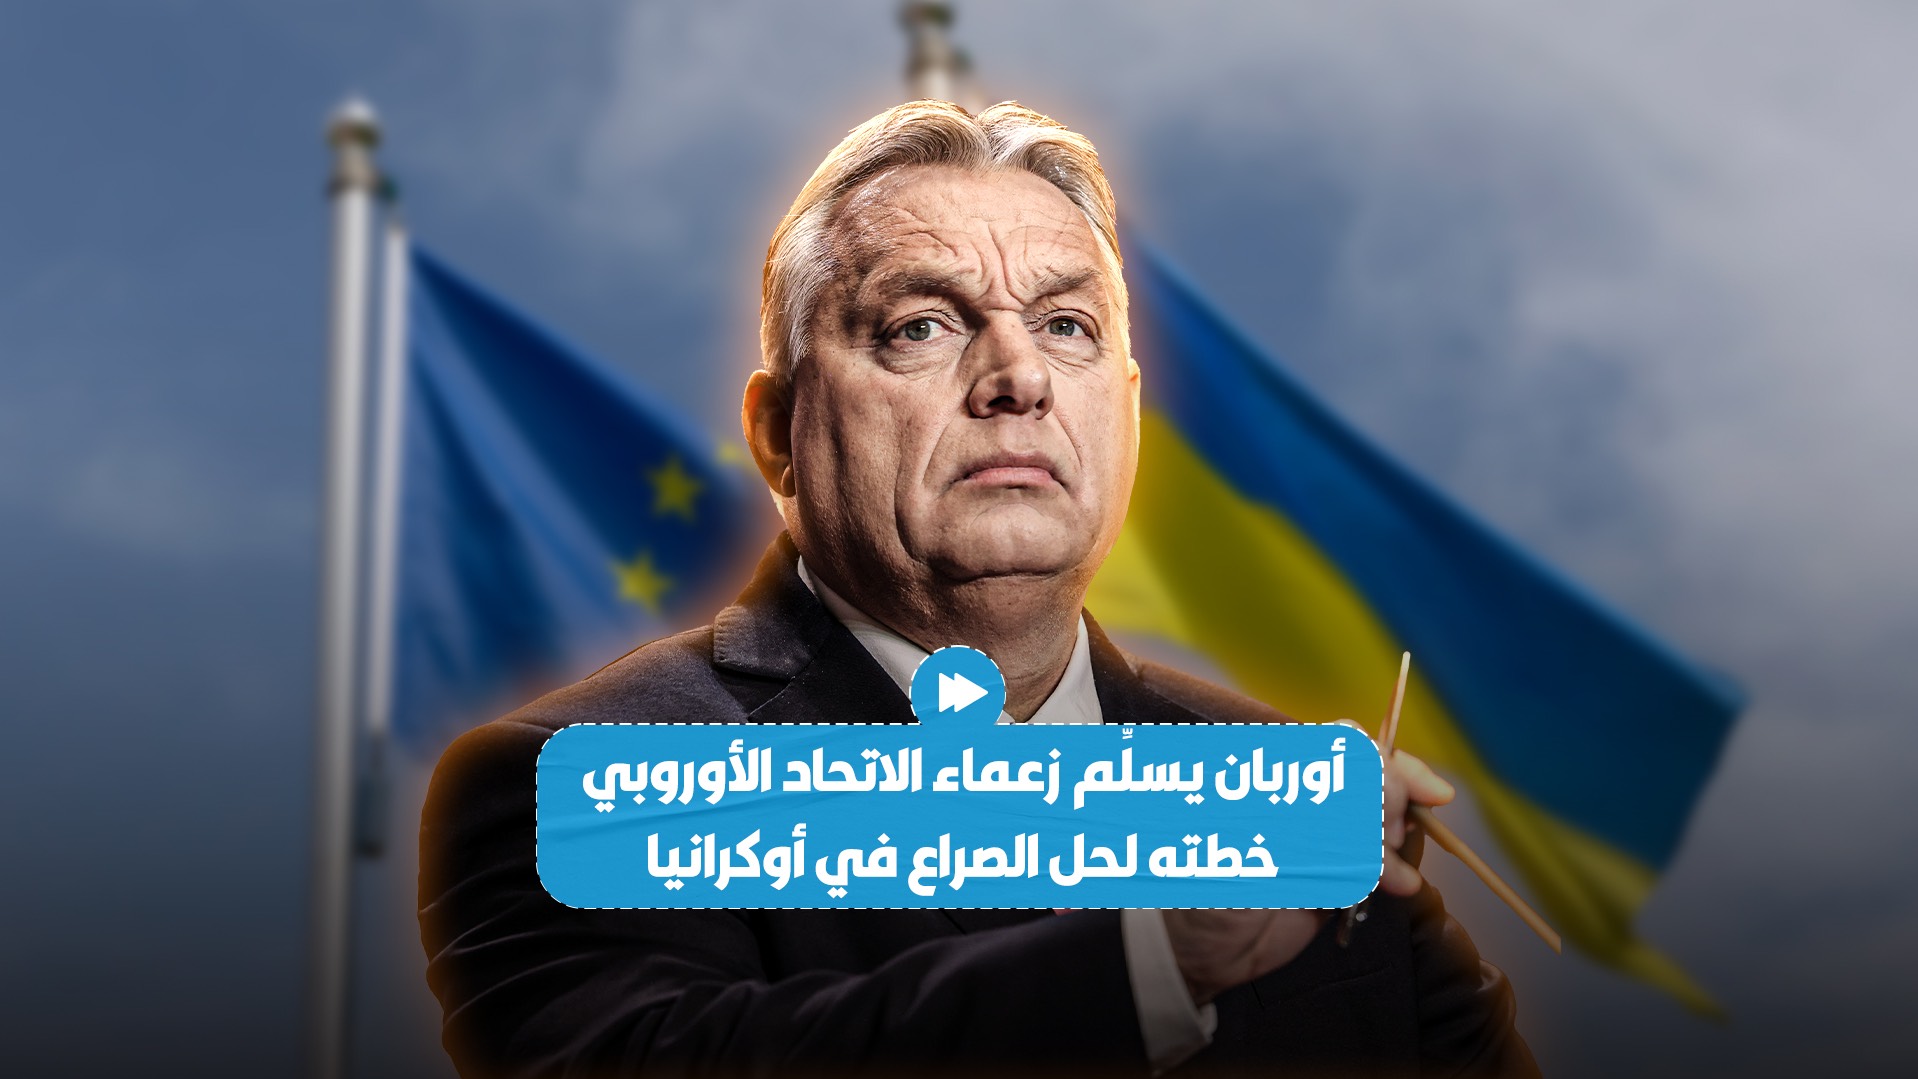 أوربان يسلم خطته للسلام في أوكرانيا لقادة الاتحاد الأوروبي!